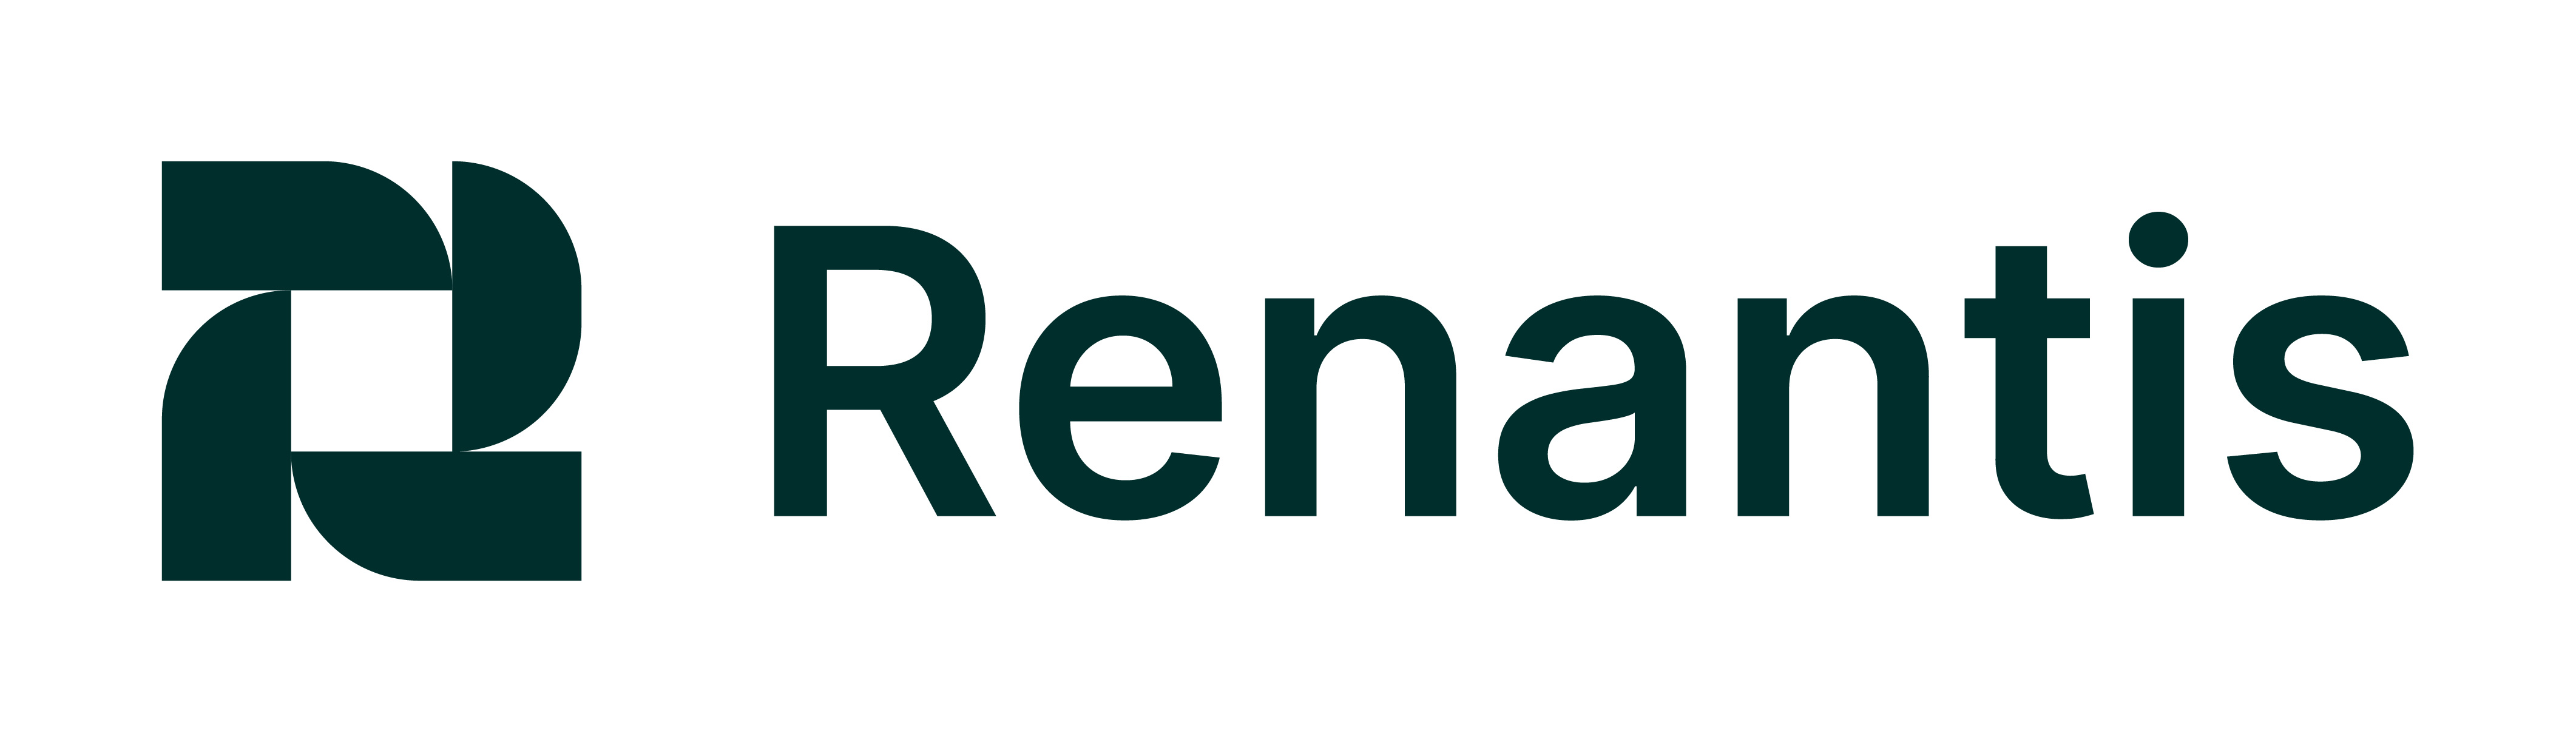 Renantis logo